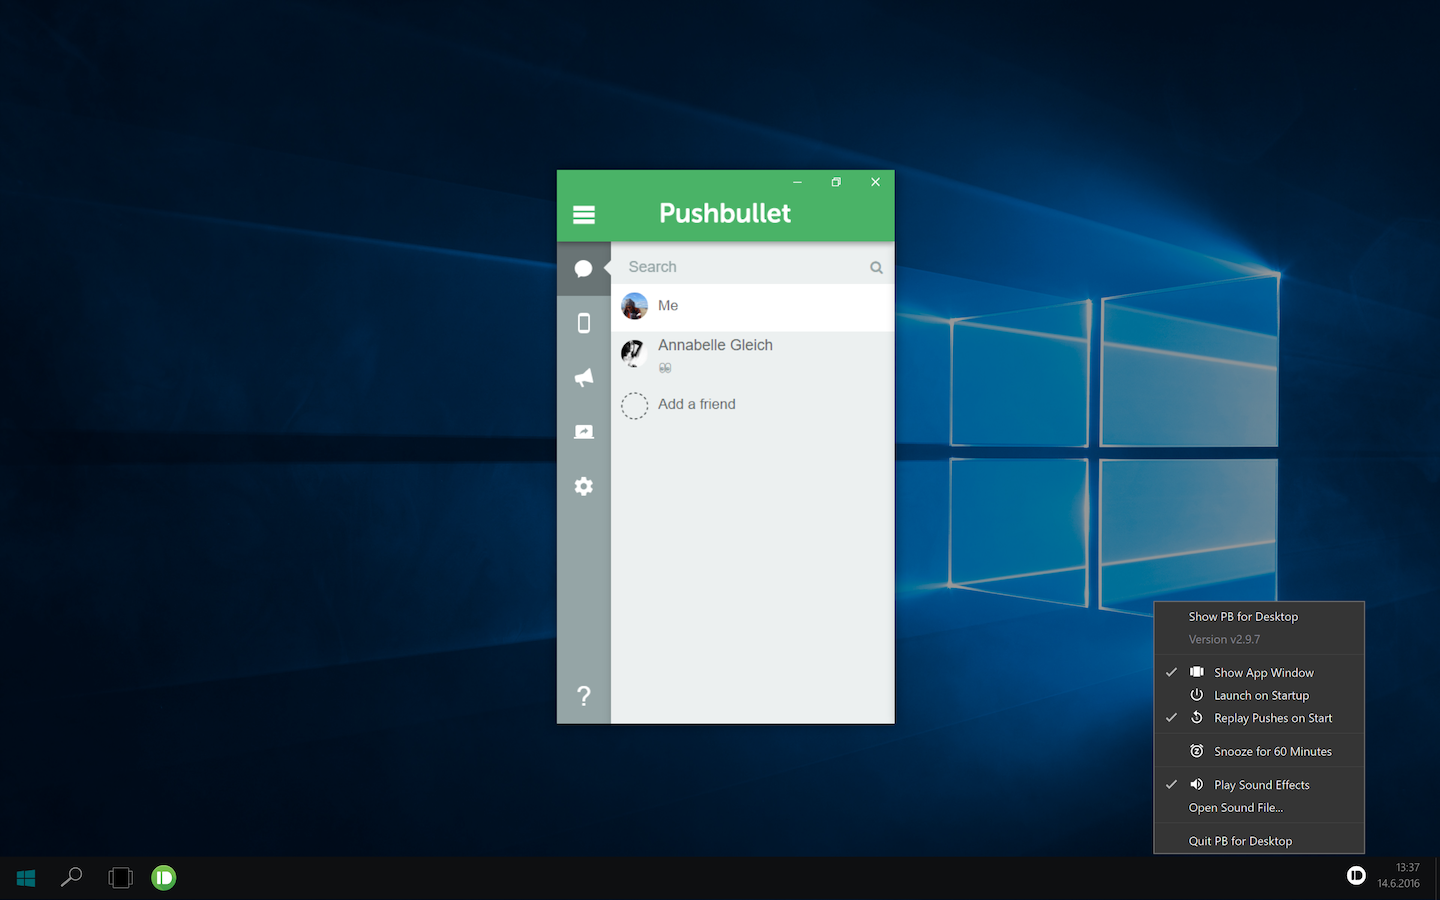 Pushbullet for Desktop on Windows